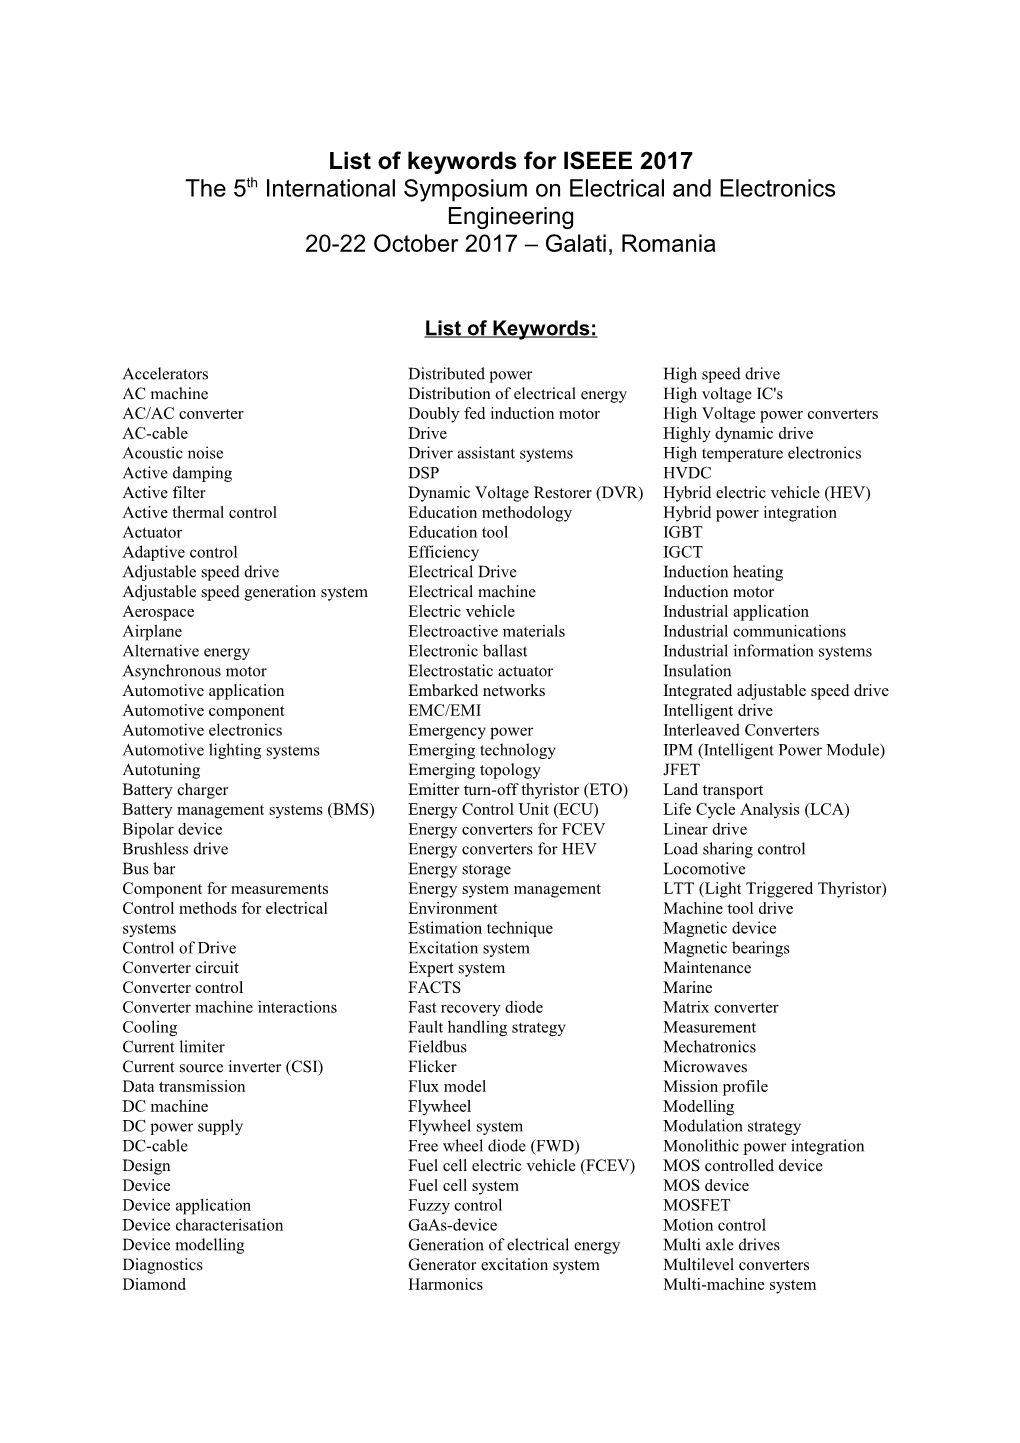 List of Keywords for EPE-PEMC 2008